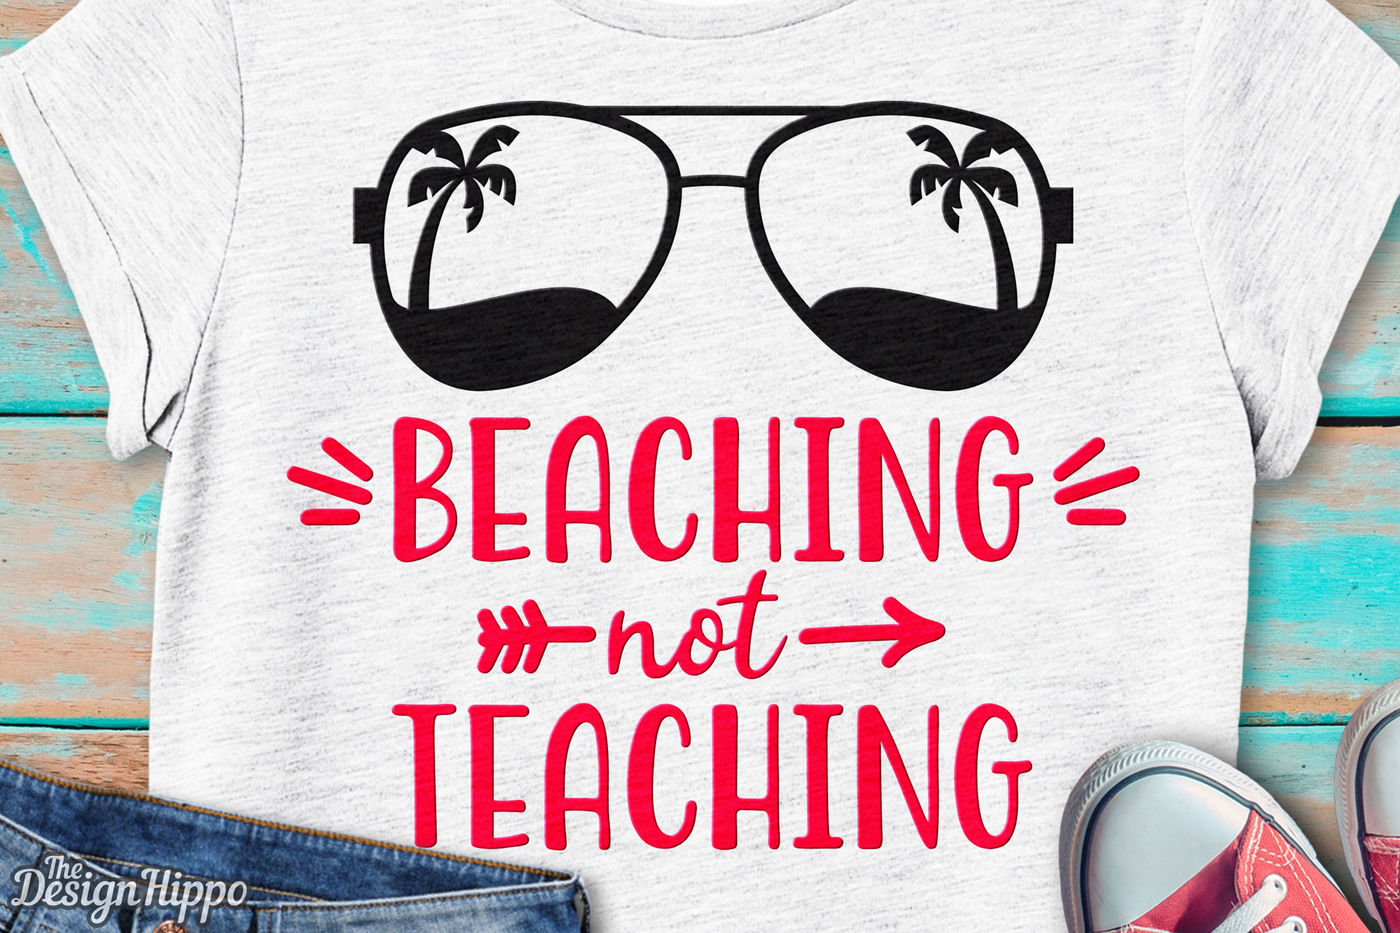 Download Summer Svg Beach Svg Digital Download School Svg Cricut Cut Files Teacher Shirt Beaching Not Teaching Svg Silhouette Teacher Svg Drawing Drafting Craft Supplies Tools